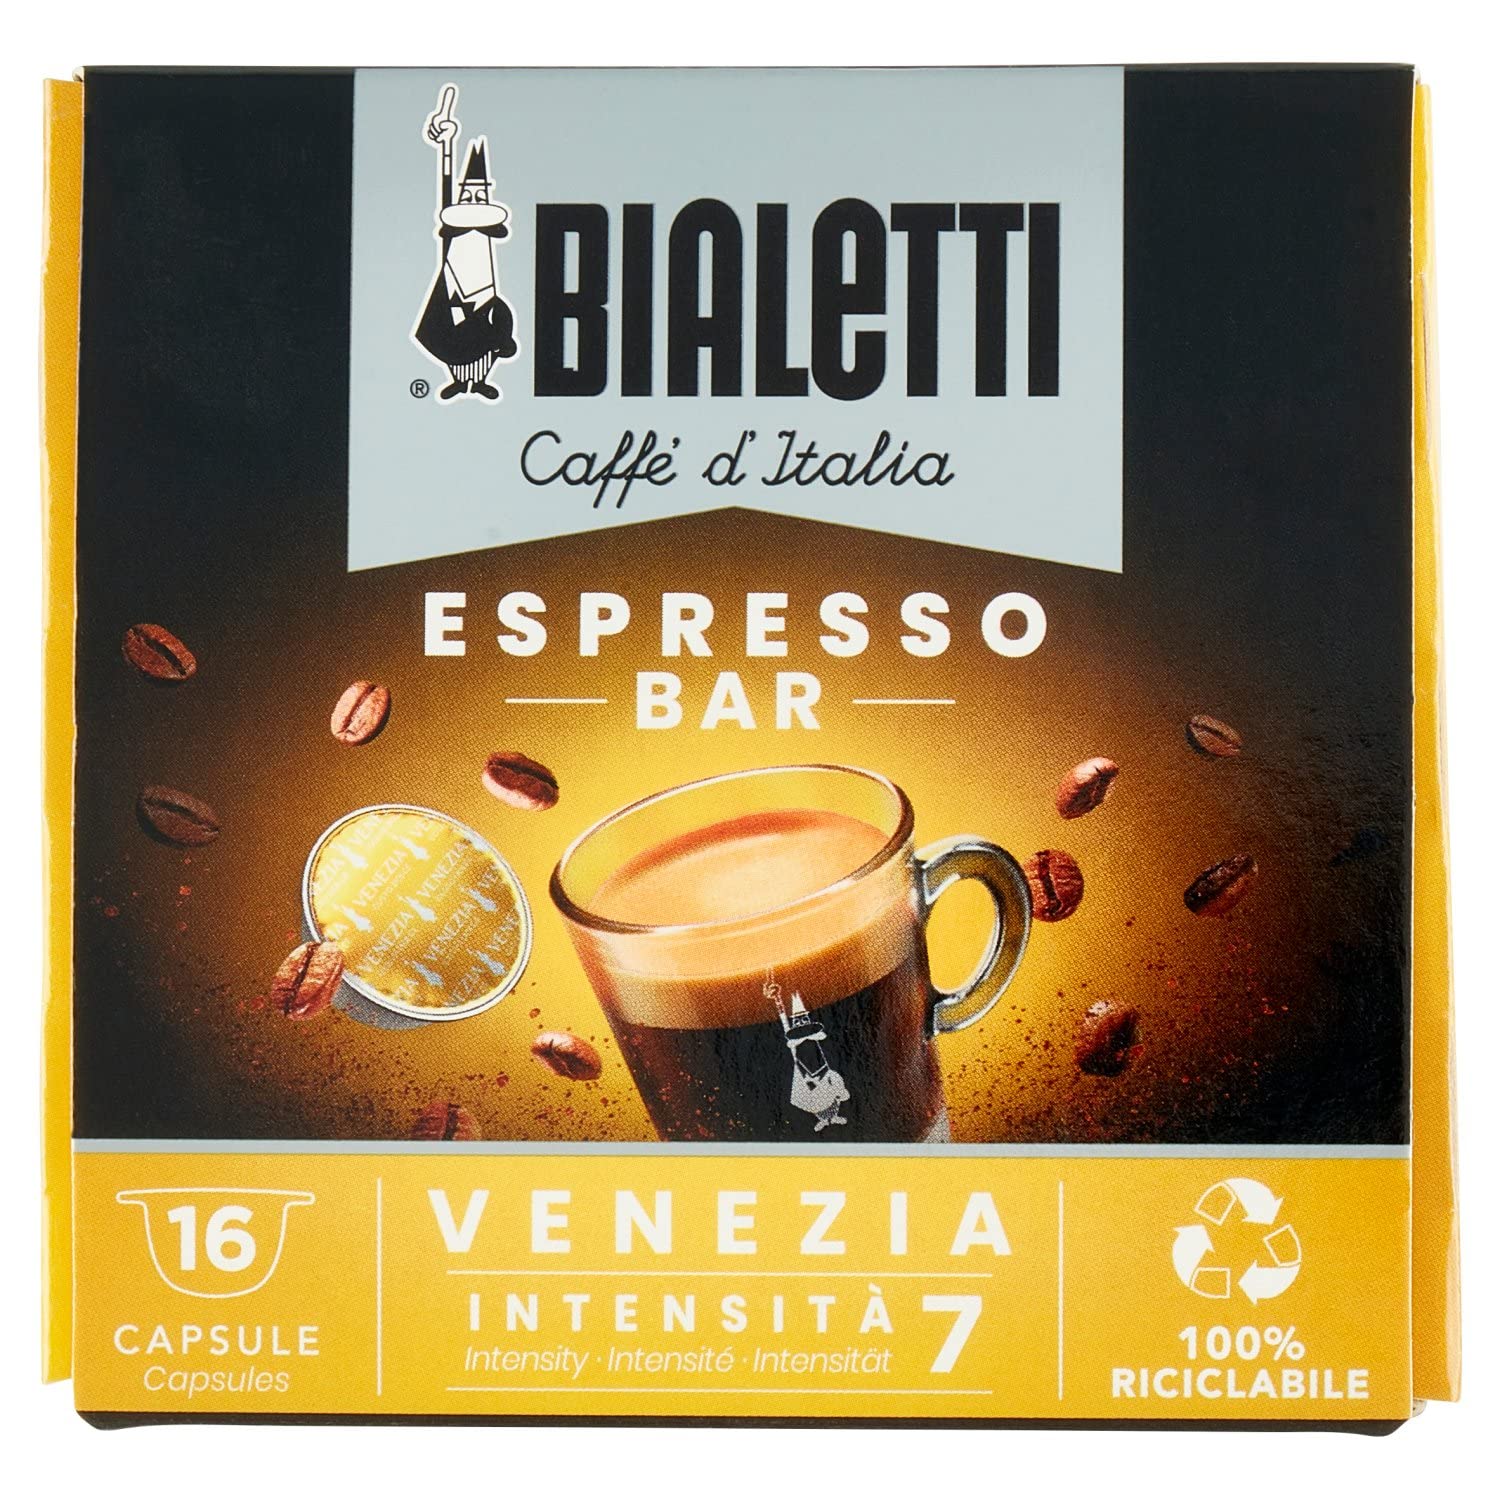 Bialetti Caffè d'Italia, box of 16 capsules, Venice, intensity 7